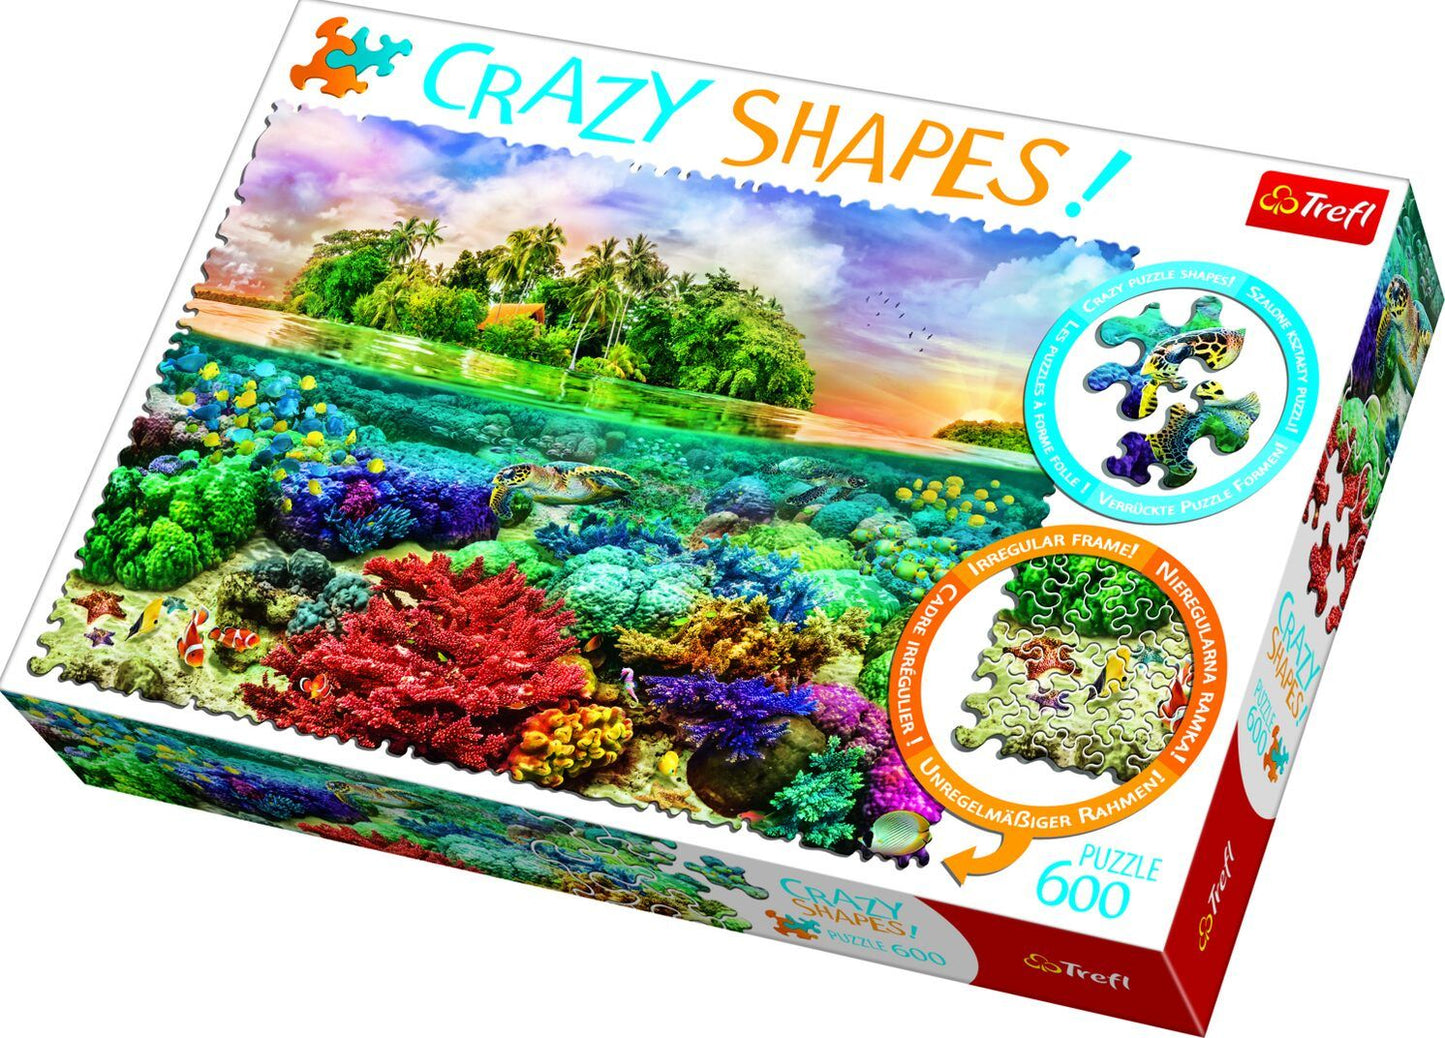 Trefl - Crazy Shapes - Tropical Island - 600 Piece Jigsaw Puzzle